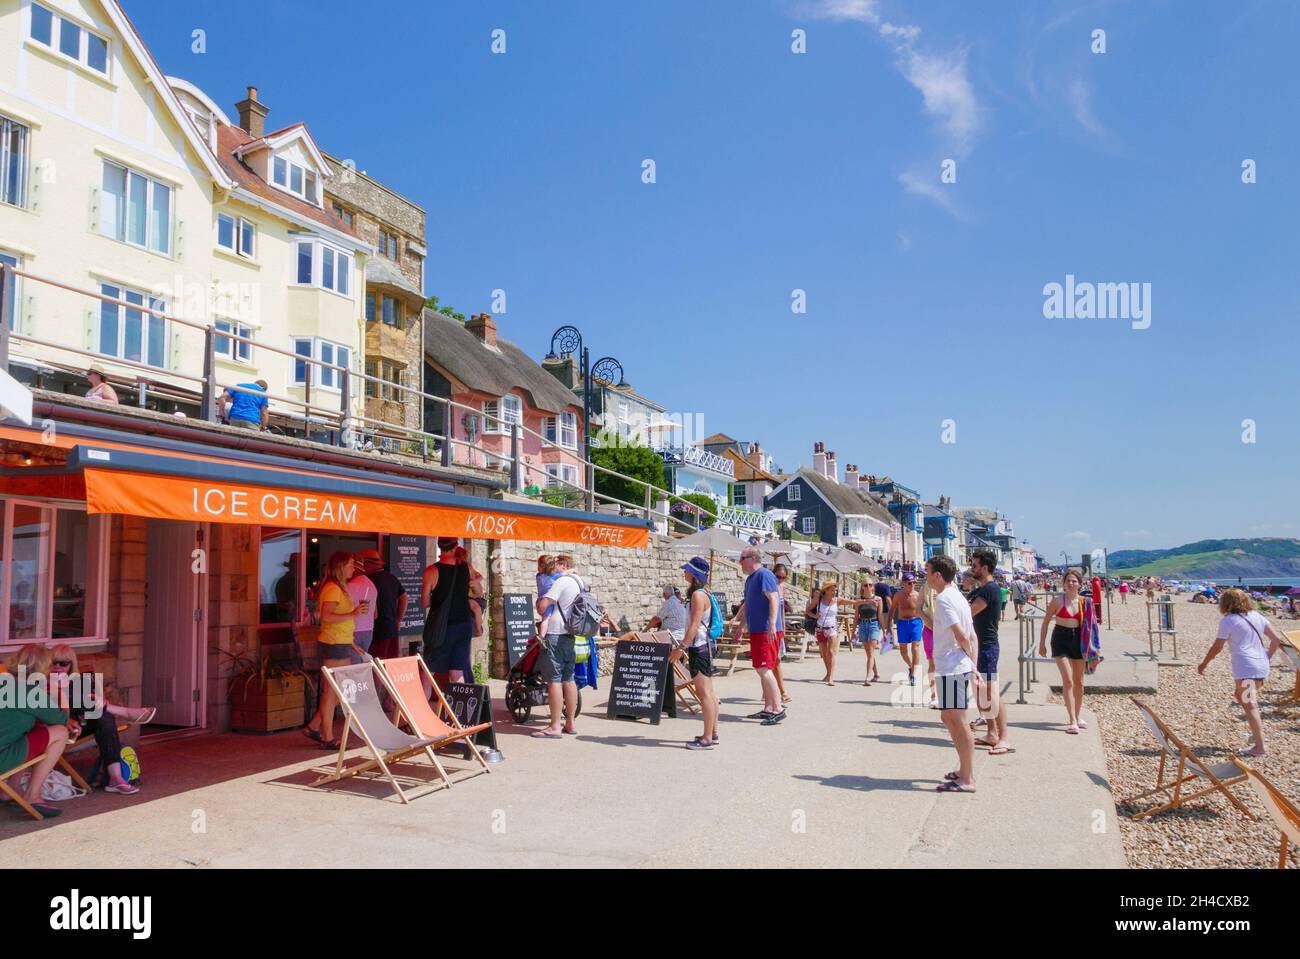 In einem Eiskioskcafé an der Marine Parade am Meer mit Blick auf den Sandstrand bei Lyme Regis Dorset England GB Europa stehen Menschen Schlange für Eiscreme Stockfoto